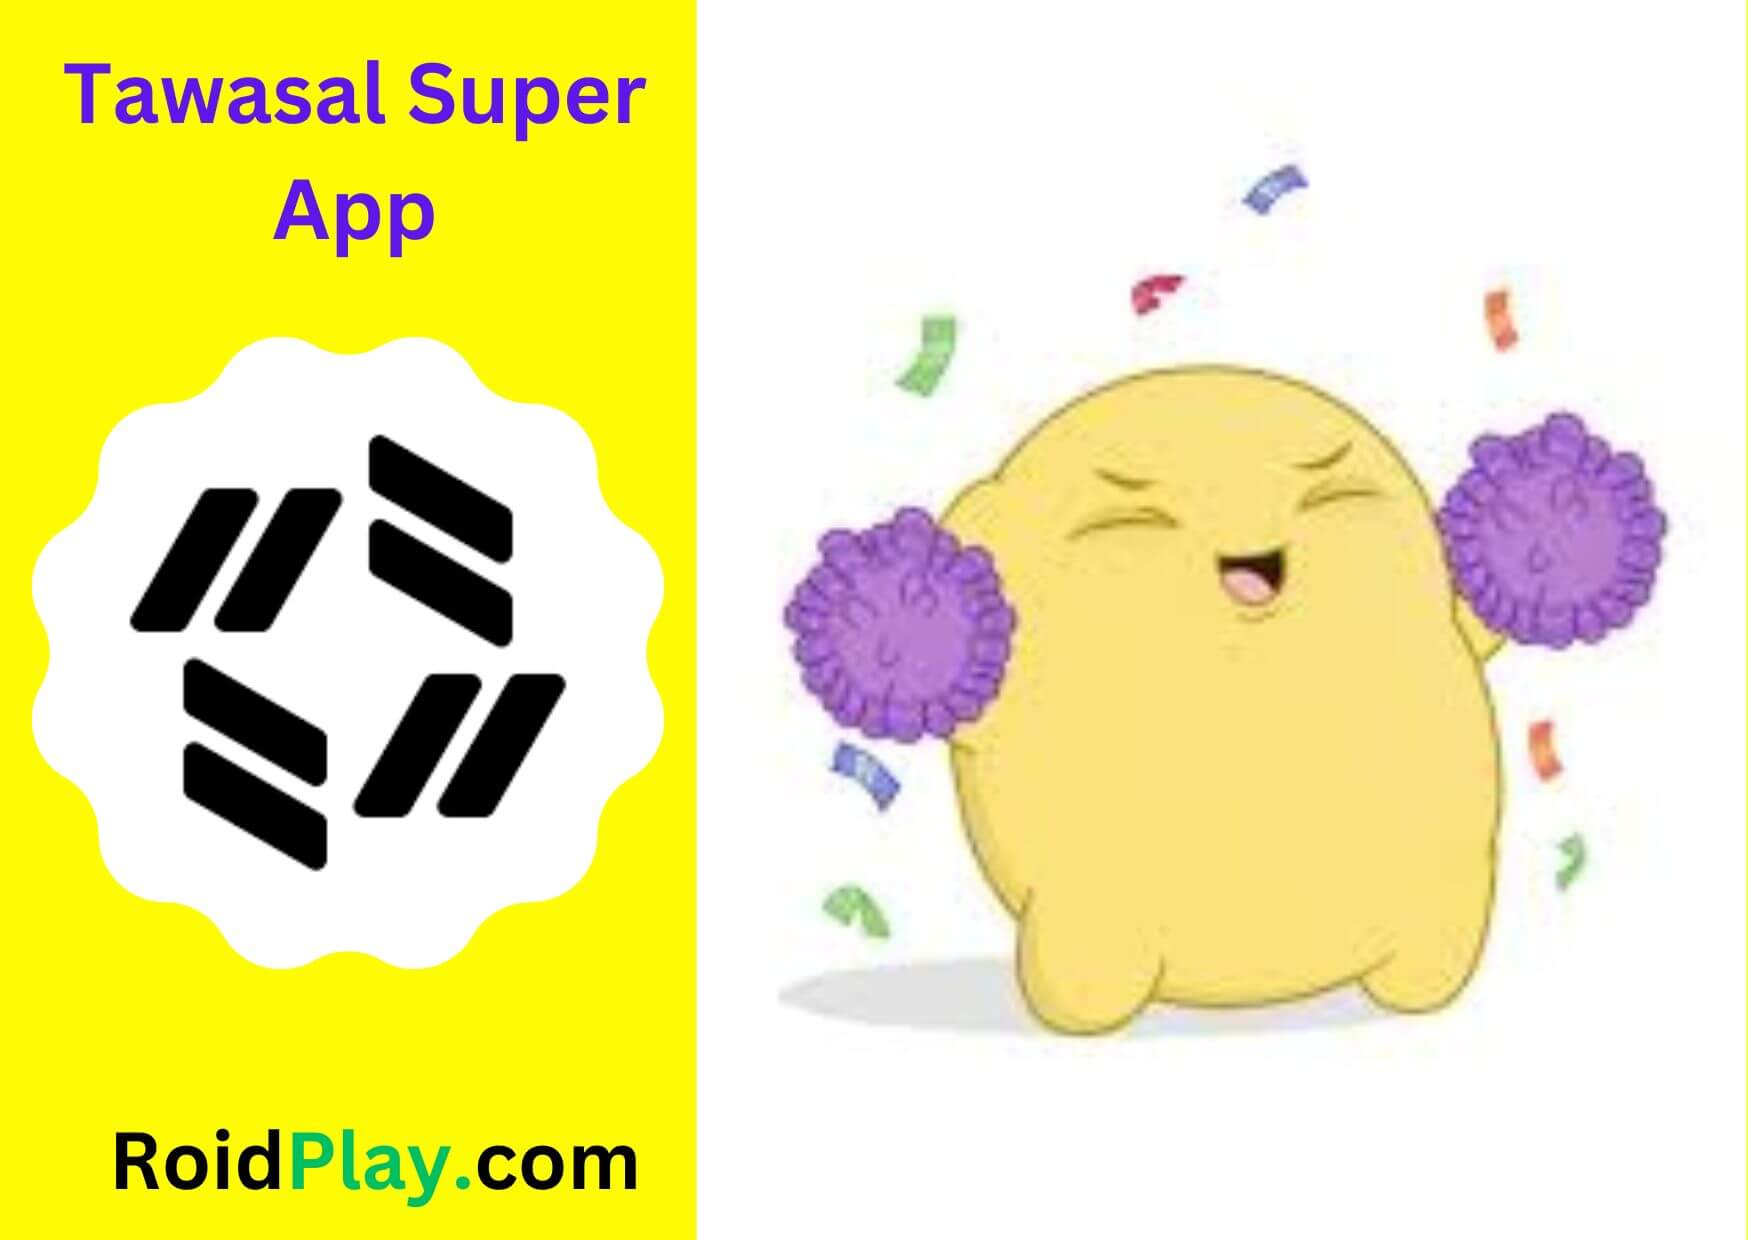 Tawasal Super App